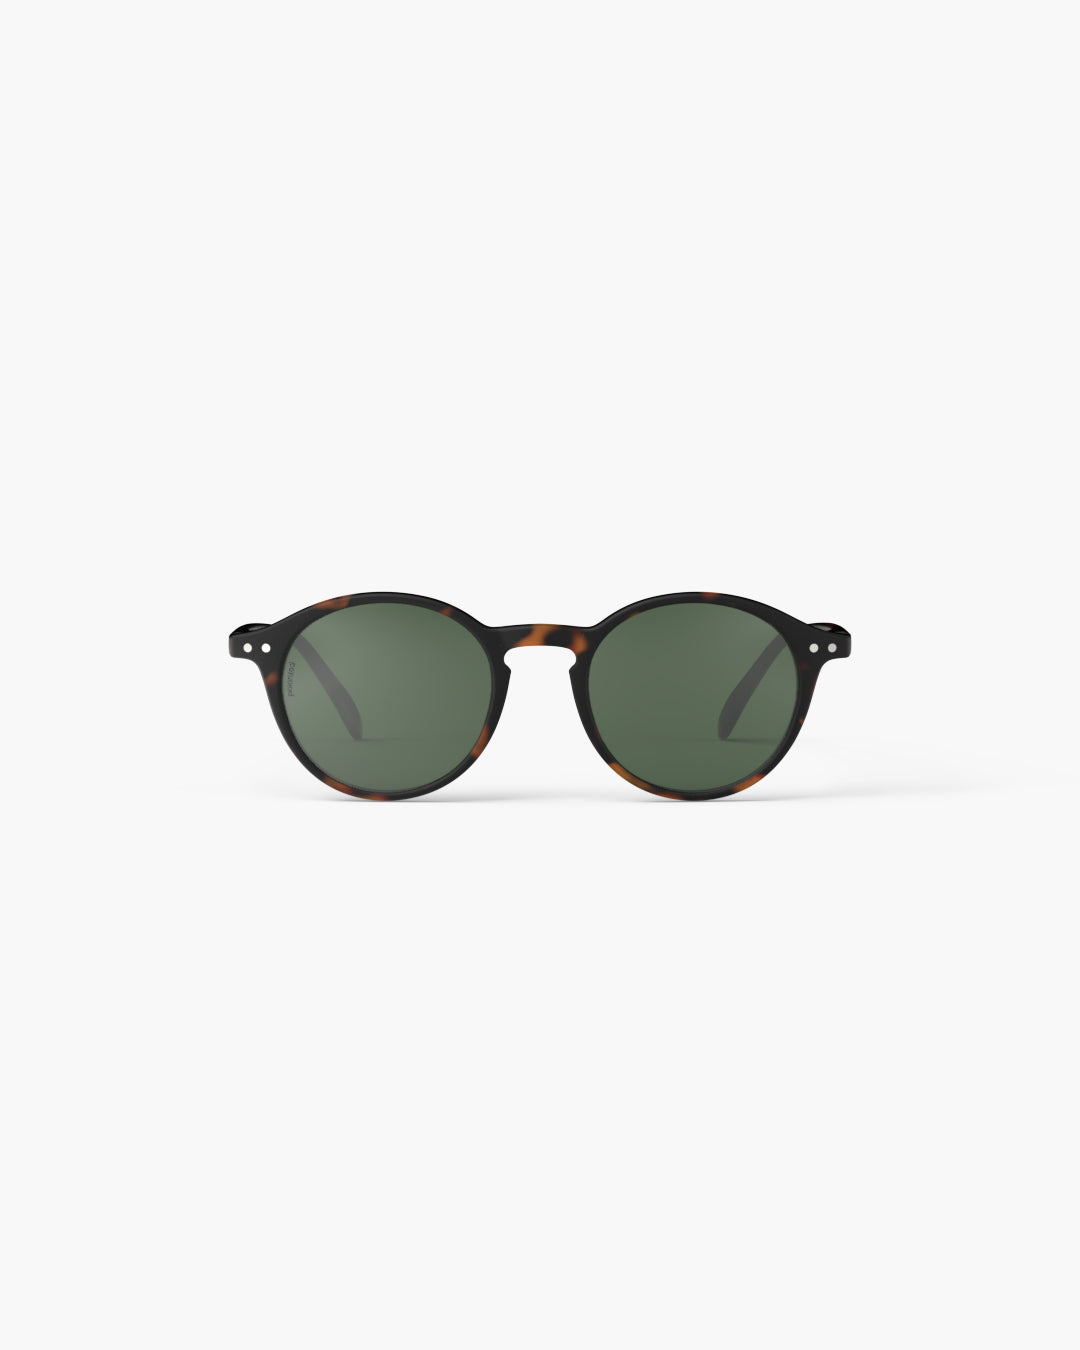 Izipizi Round Polarised Sunglasses | 2 Colours Available